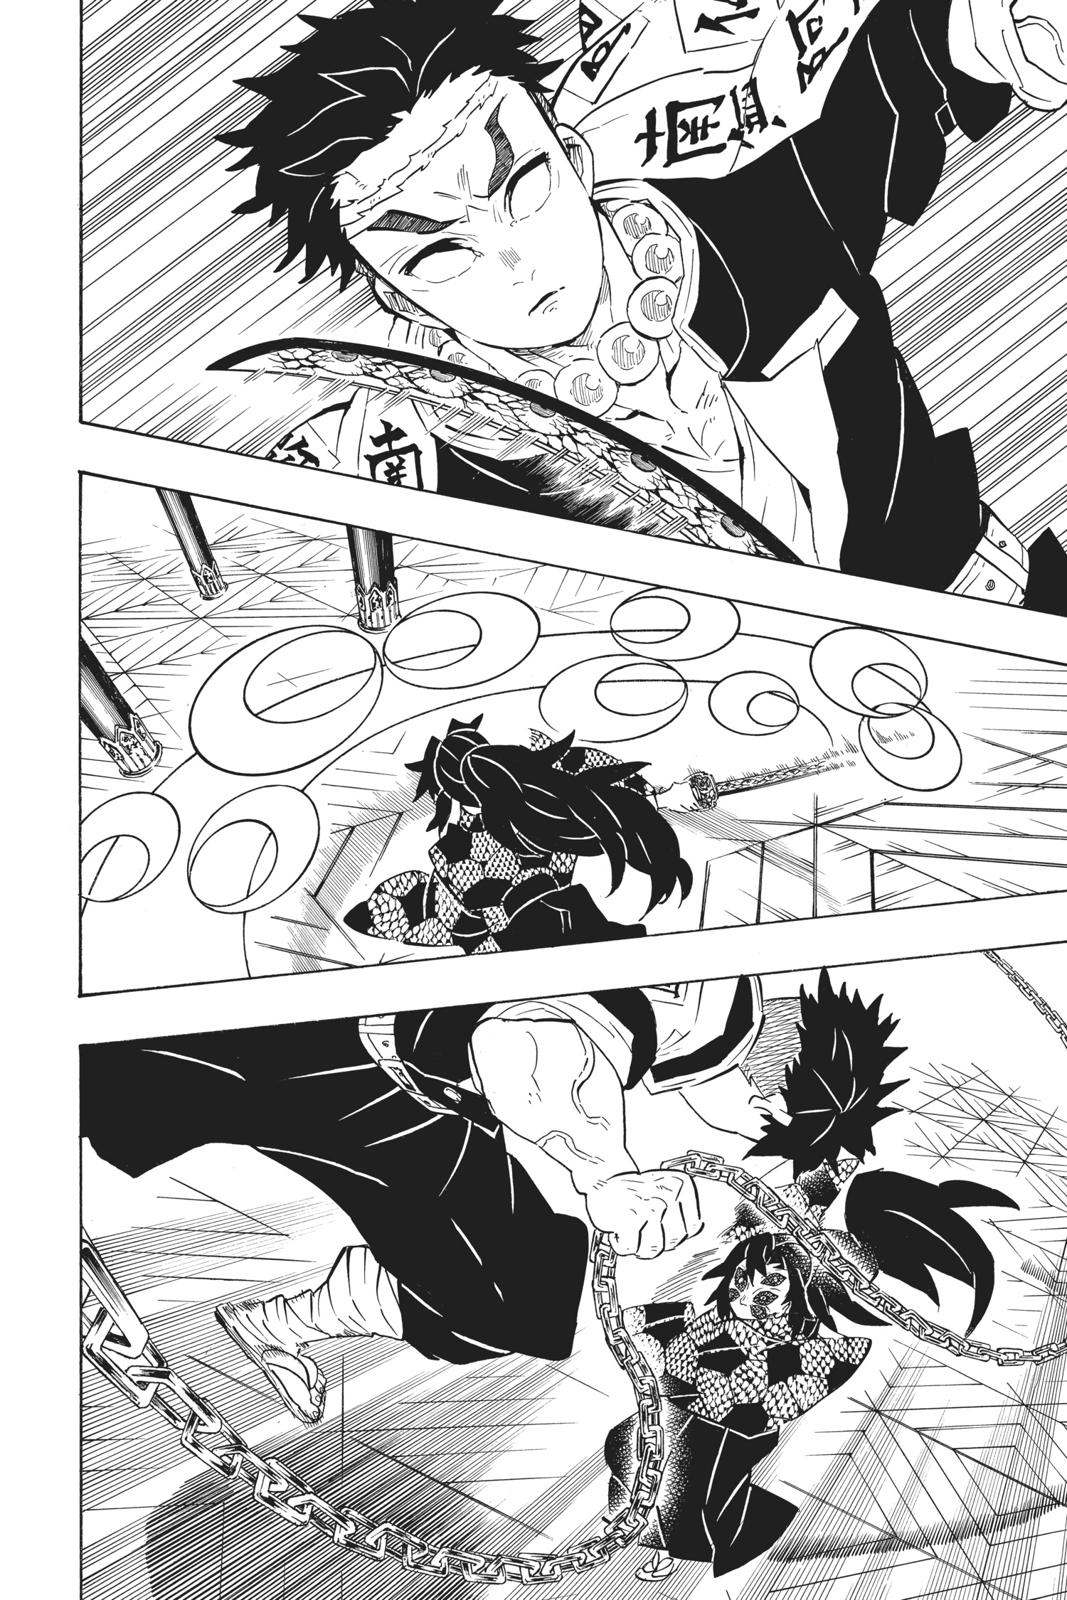 Demon Slayer Manga Manga Chapter - 169 - image 12